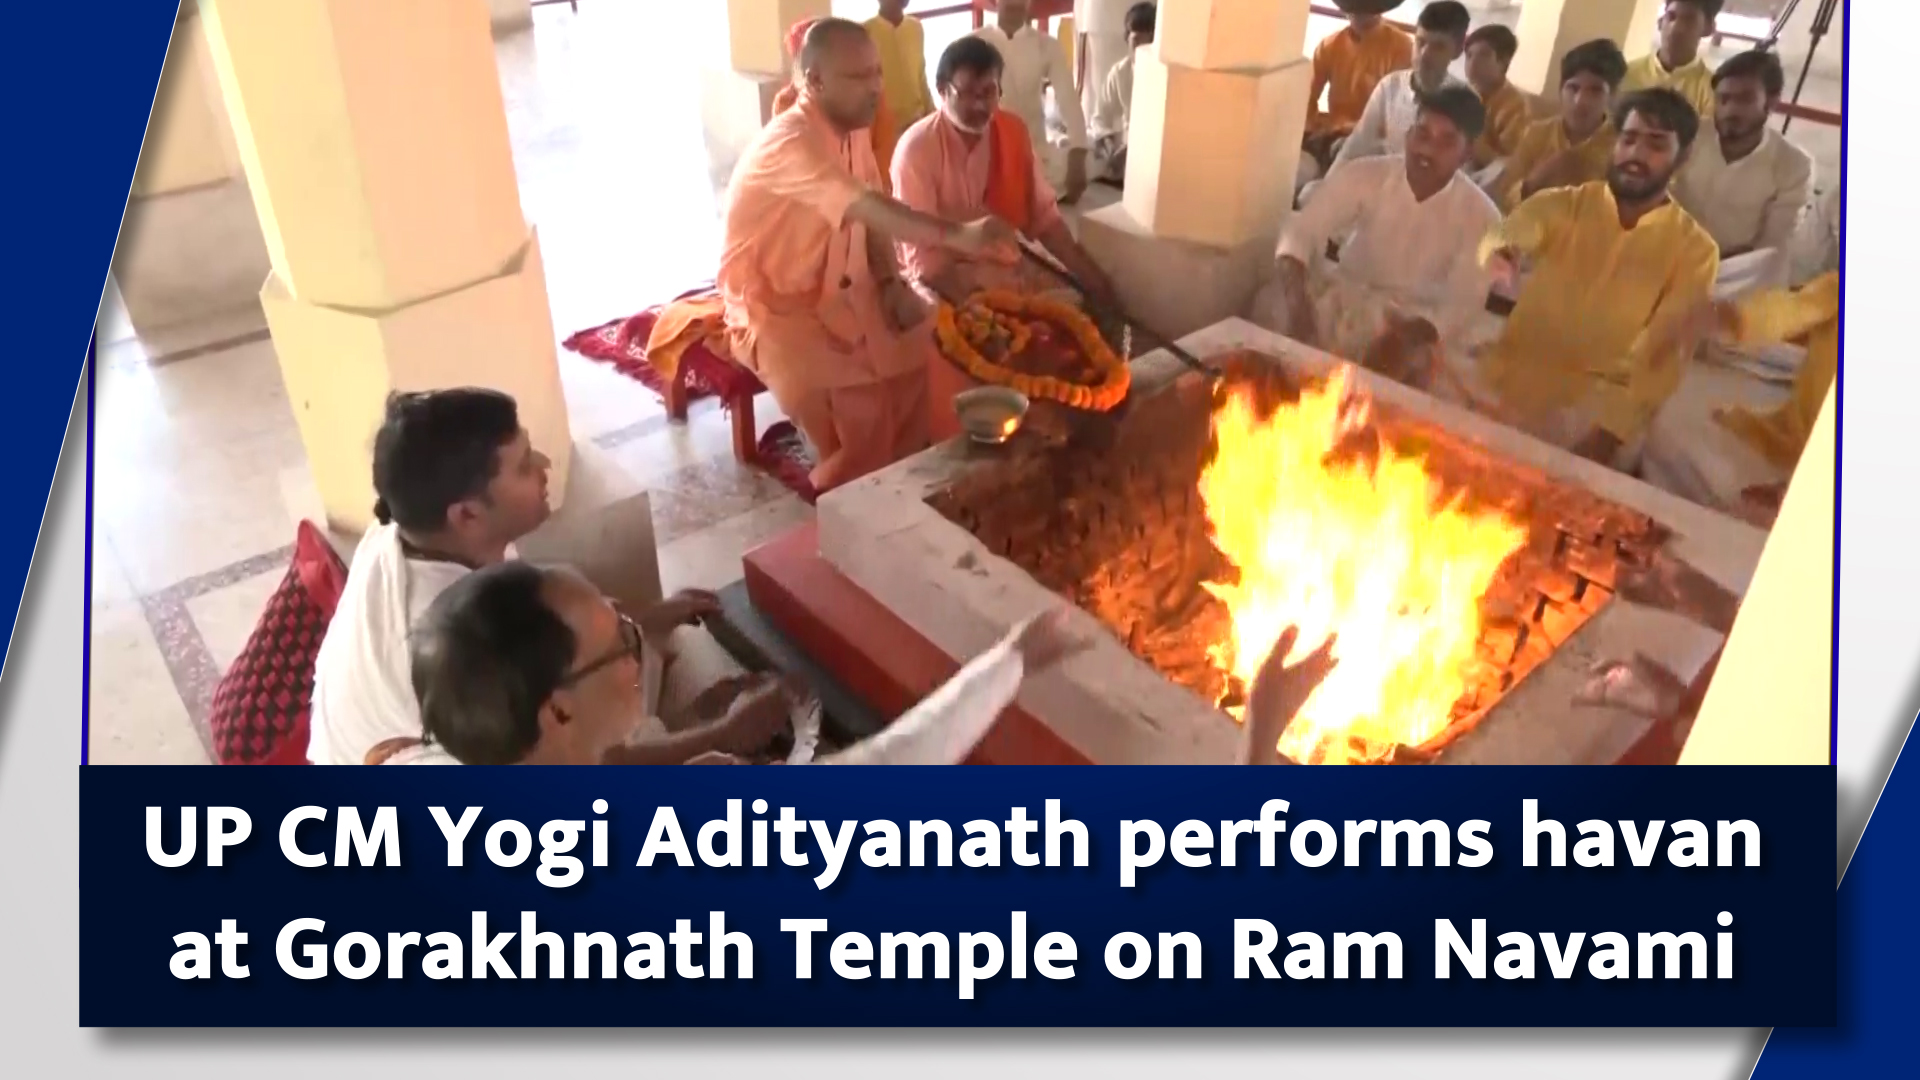 UP CM Yogi Adityanath performs havan at Gorakhnath Temple on Ram Navami